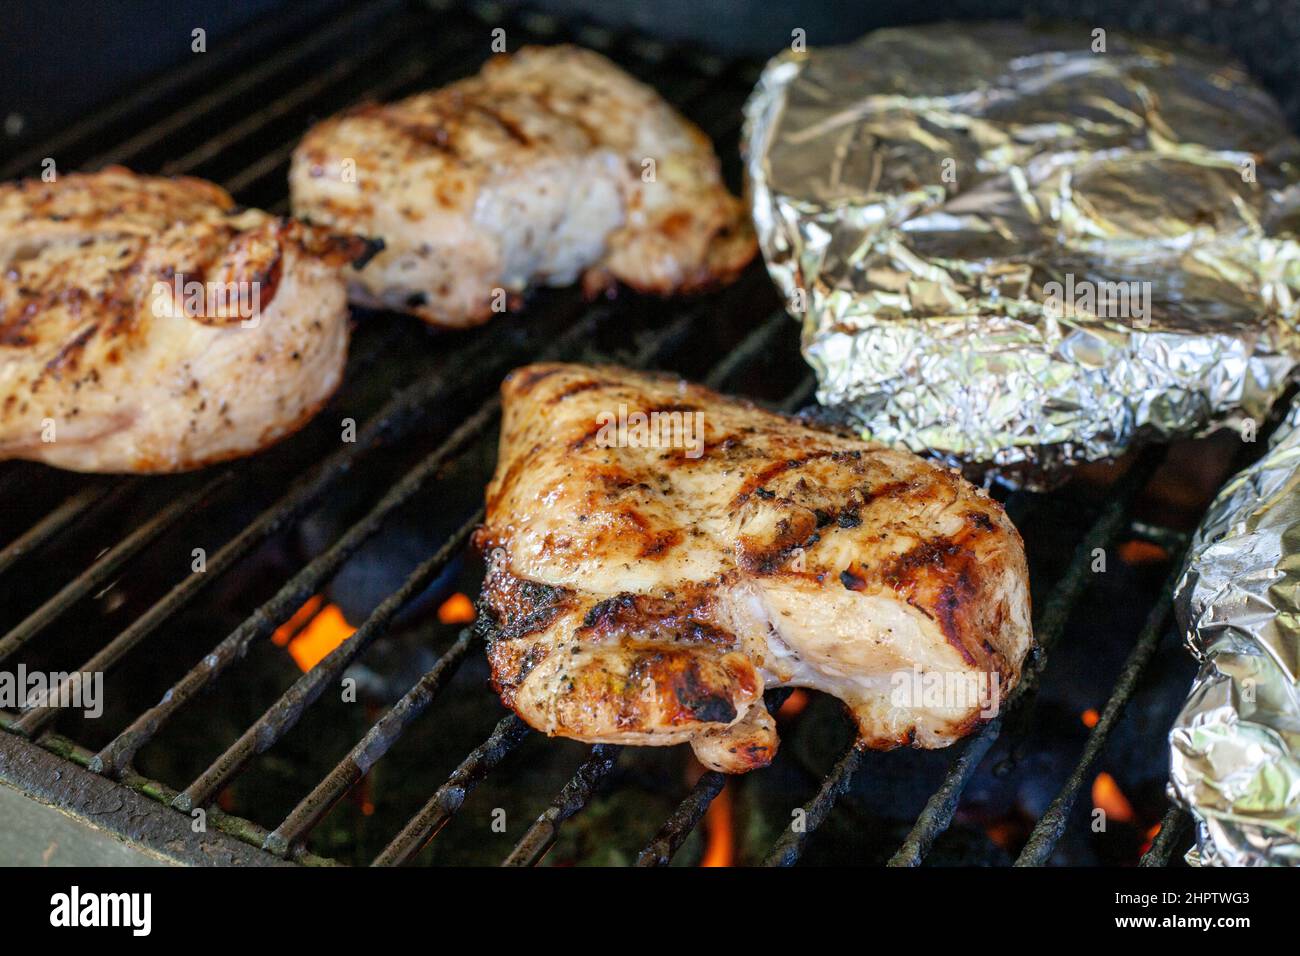 Pollo cocido en la parrilla: Pechugas de pollo deshuesadas asando en una parrilla con paquetes envueltos en papel de aluminio en el fondo. Foto de stock